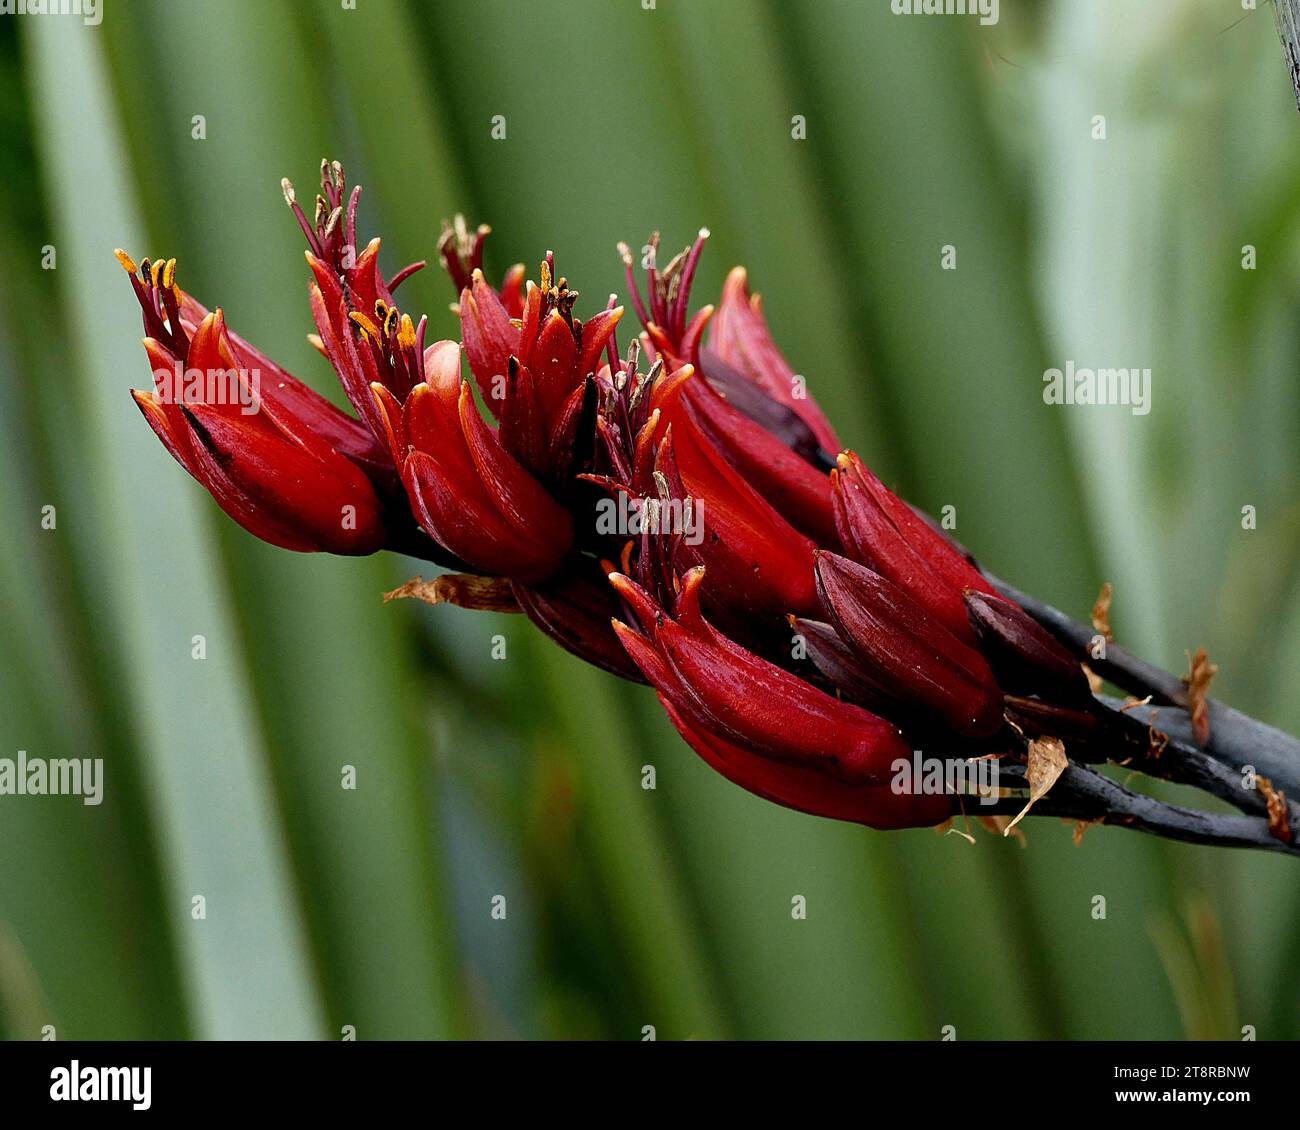 Phormium tenax. Il lino neozelandese è una delle piante autoctone più distintive della contea. Ha foglie a forma di spada lunghe 1-3 metri che crescono a forma di ventaglio. In primavera, gli uccelli, in particolare tūī, si riversano per nutrirsi del nettare dei suoi fiori tubolari, che fioriscono su steli lunghi fino a 4,5 metri. Trasportando il polline da una pianta all'altra, gli uccelli aiutano il lino a produrre semi in lunghi baccelli Foto Stock